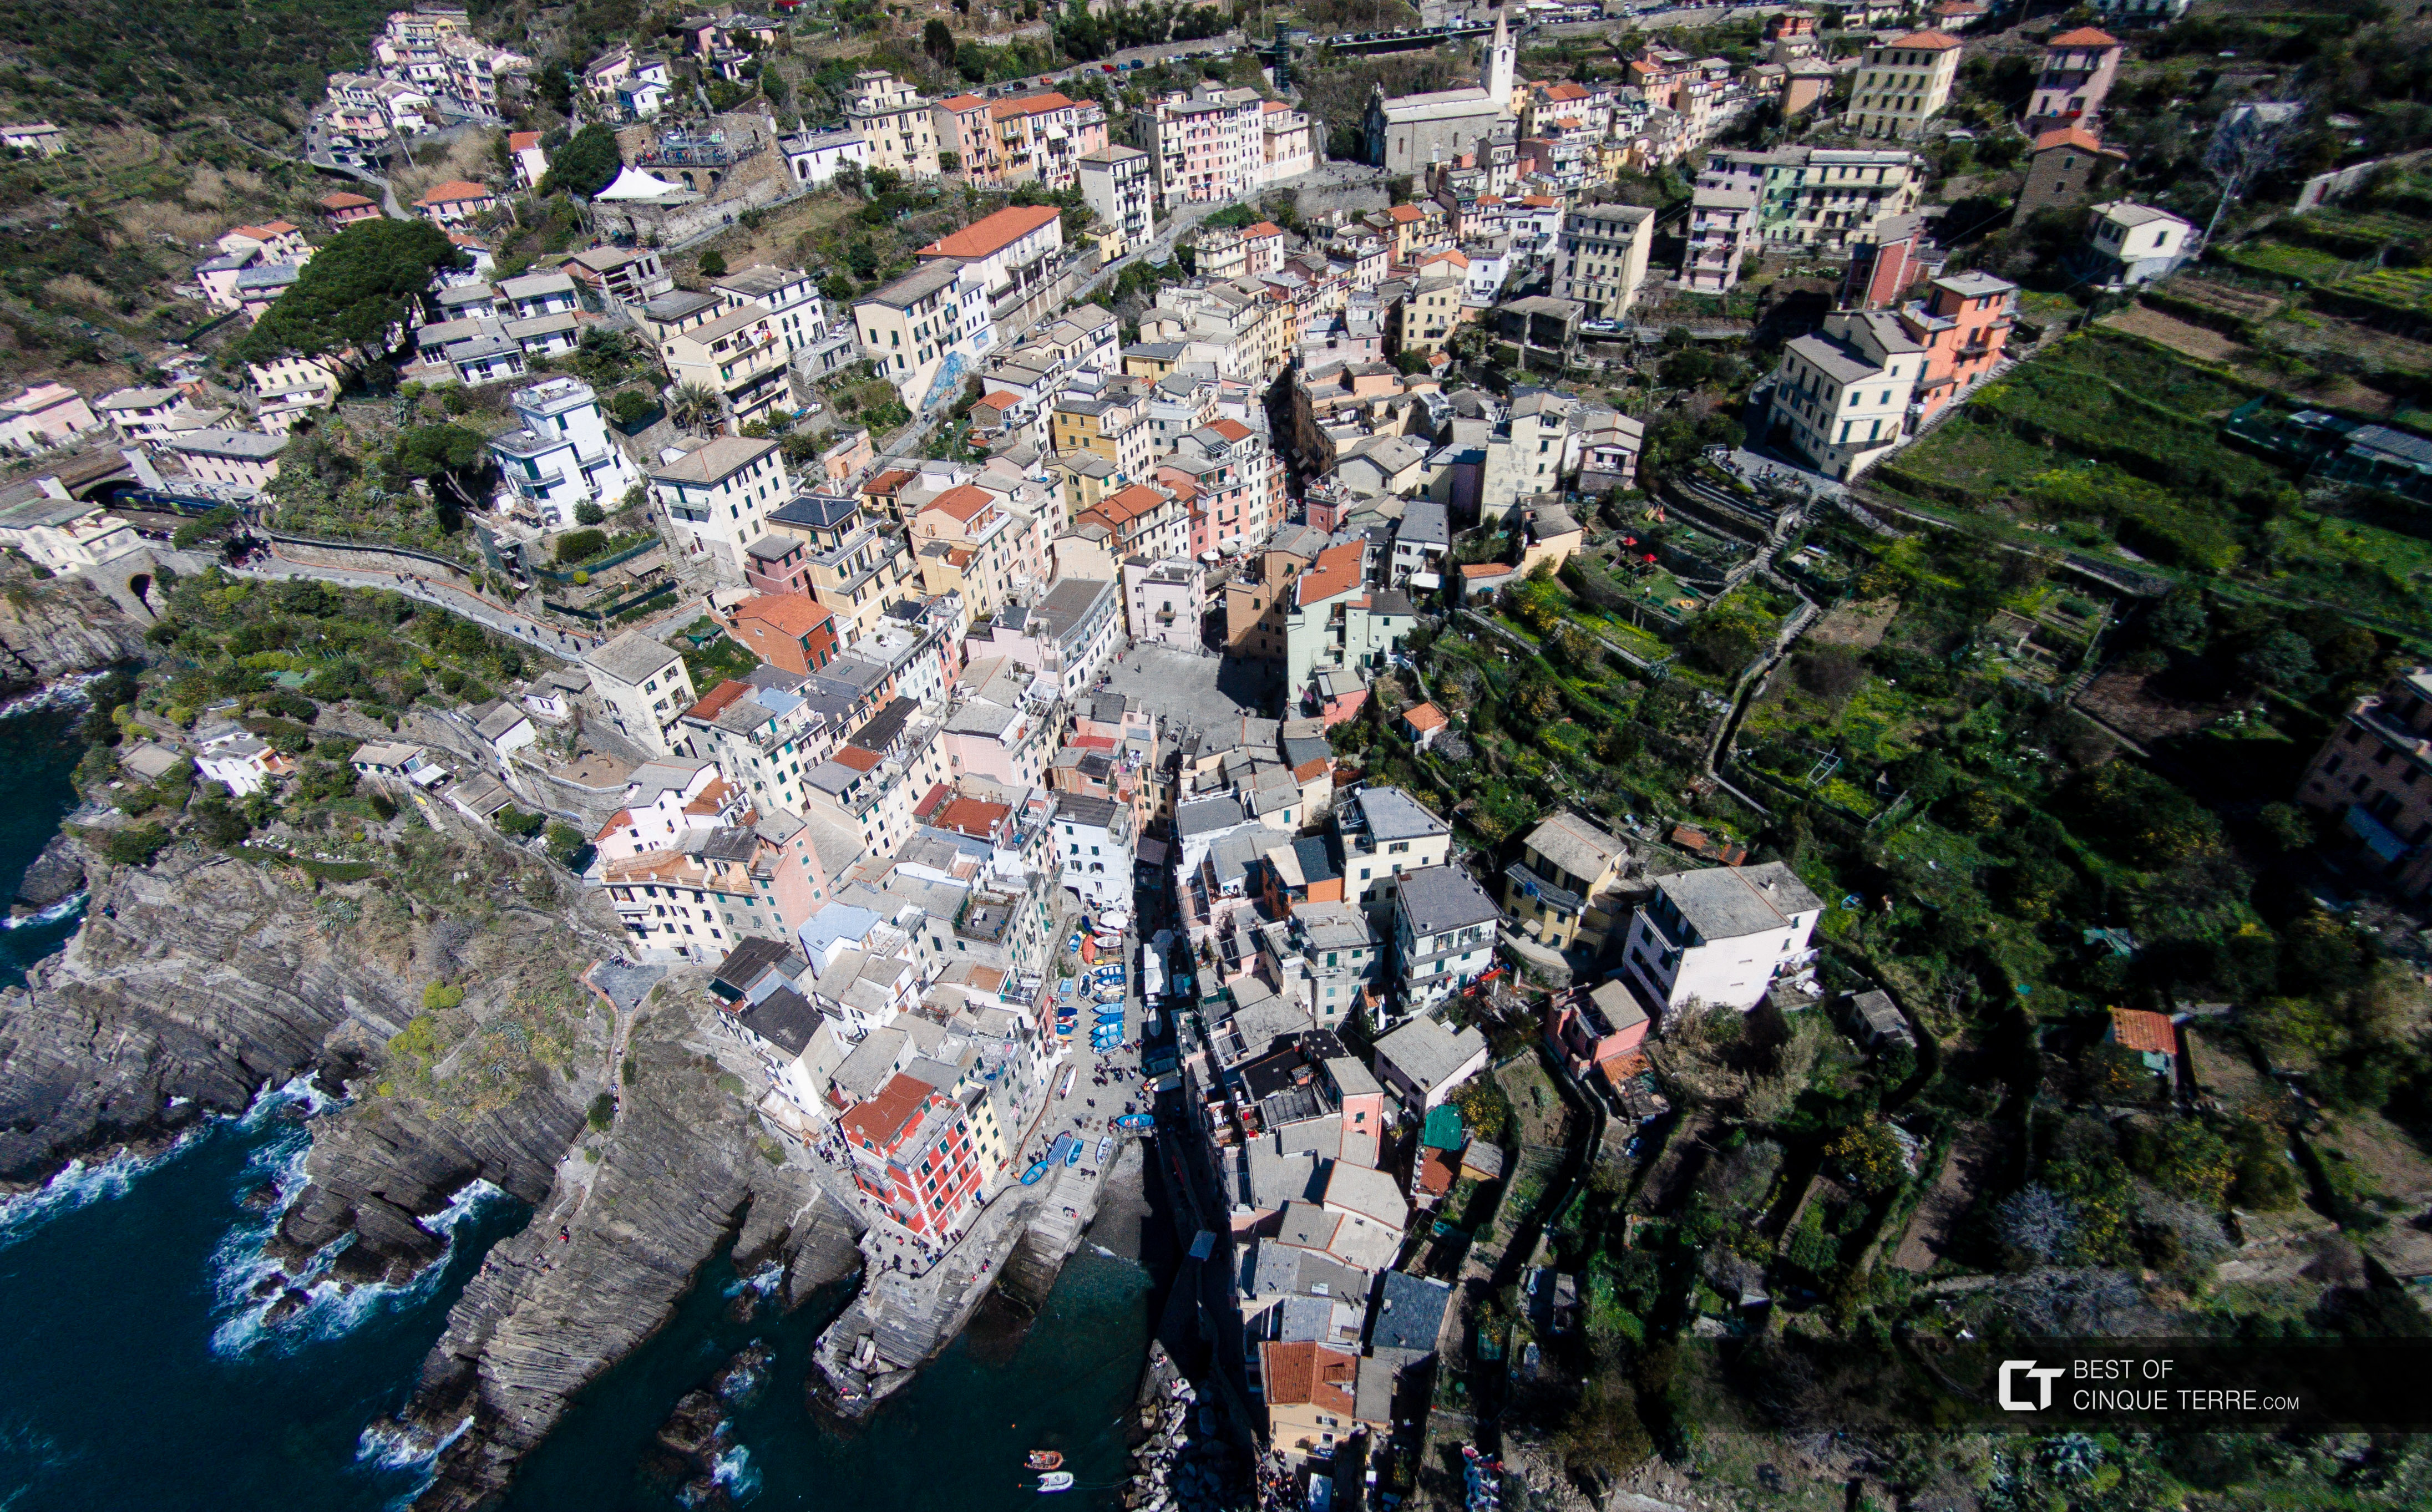 Aerial view of the village, Riomaggiore, Cinque Terre, Italy